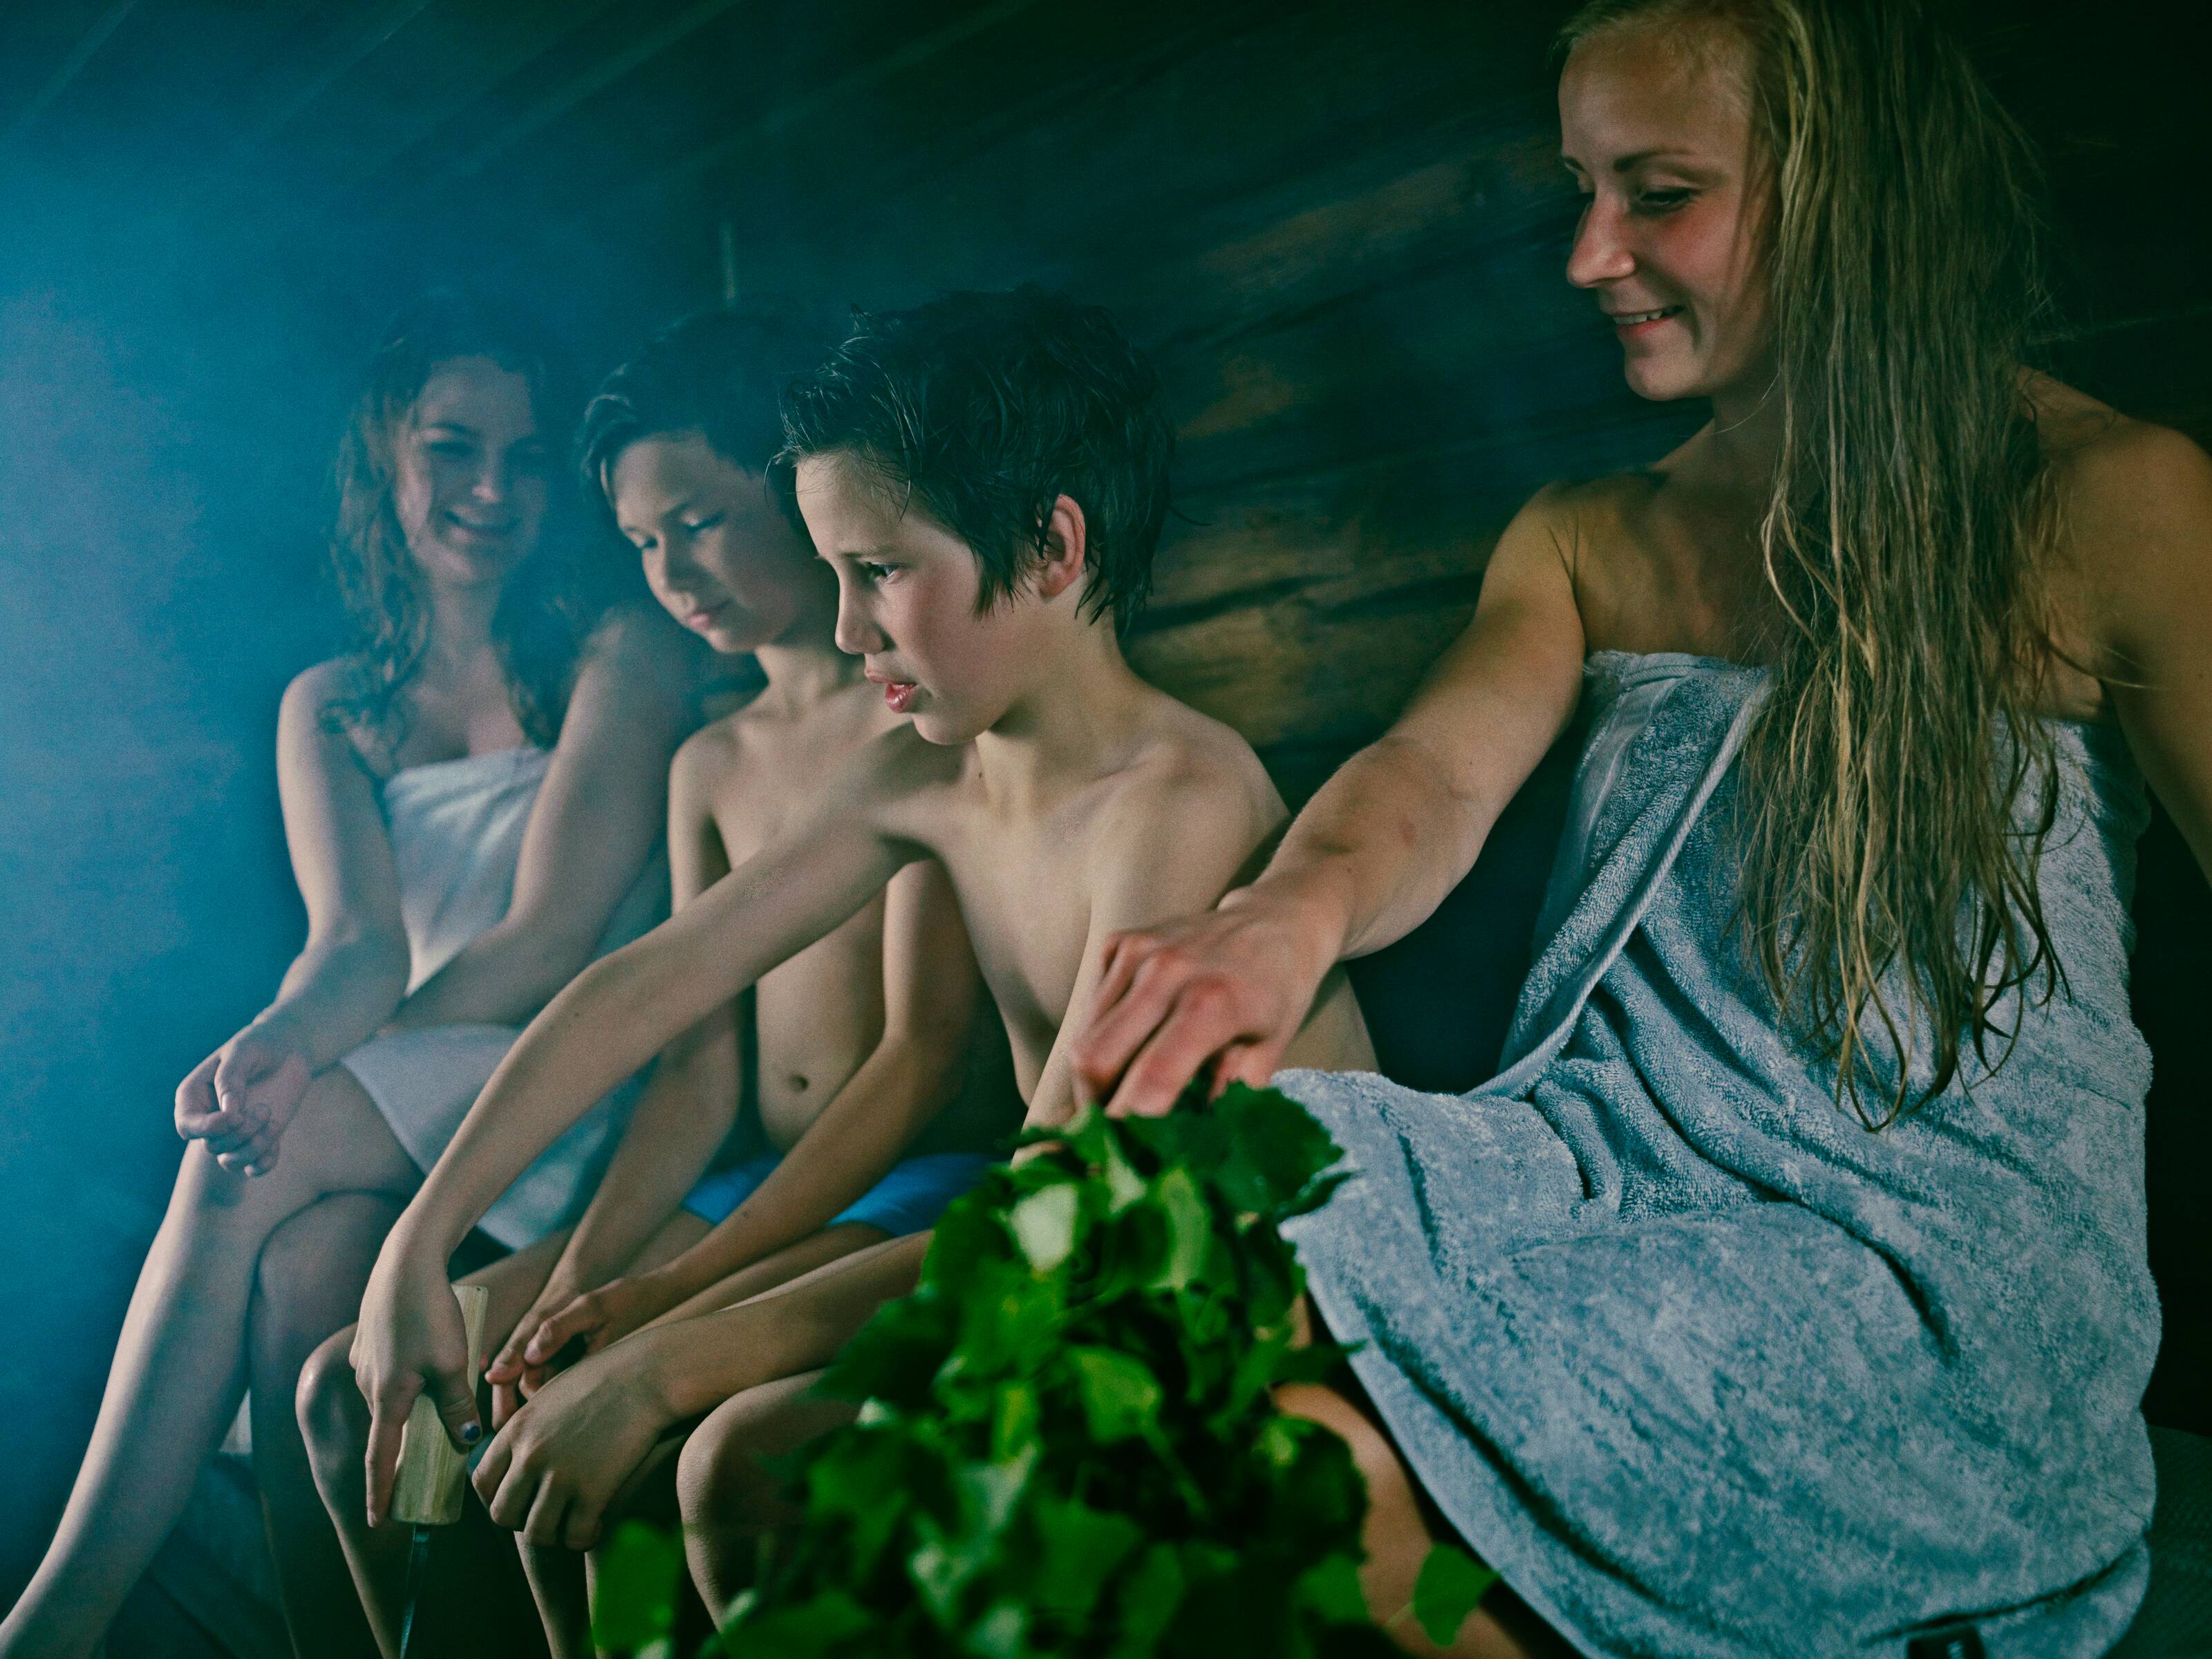 Des femmes et des enfants dans un sauna finlandais. Un enfant jette de l’eau sur un poêle de sauna